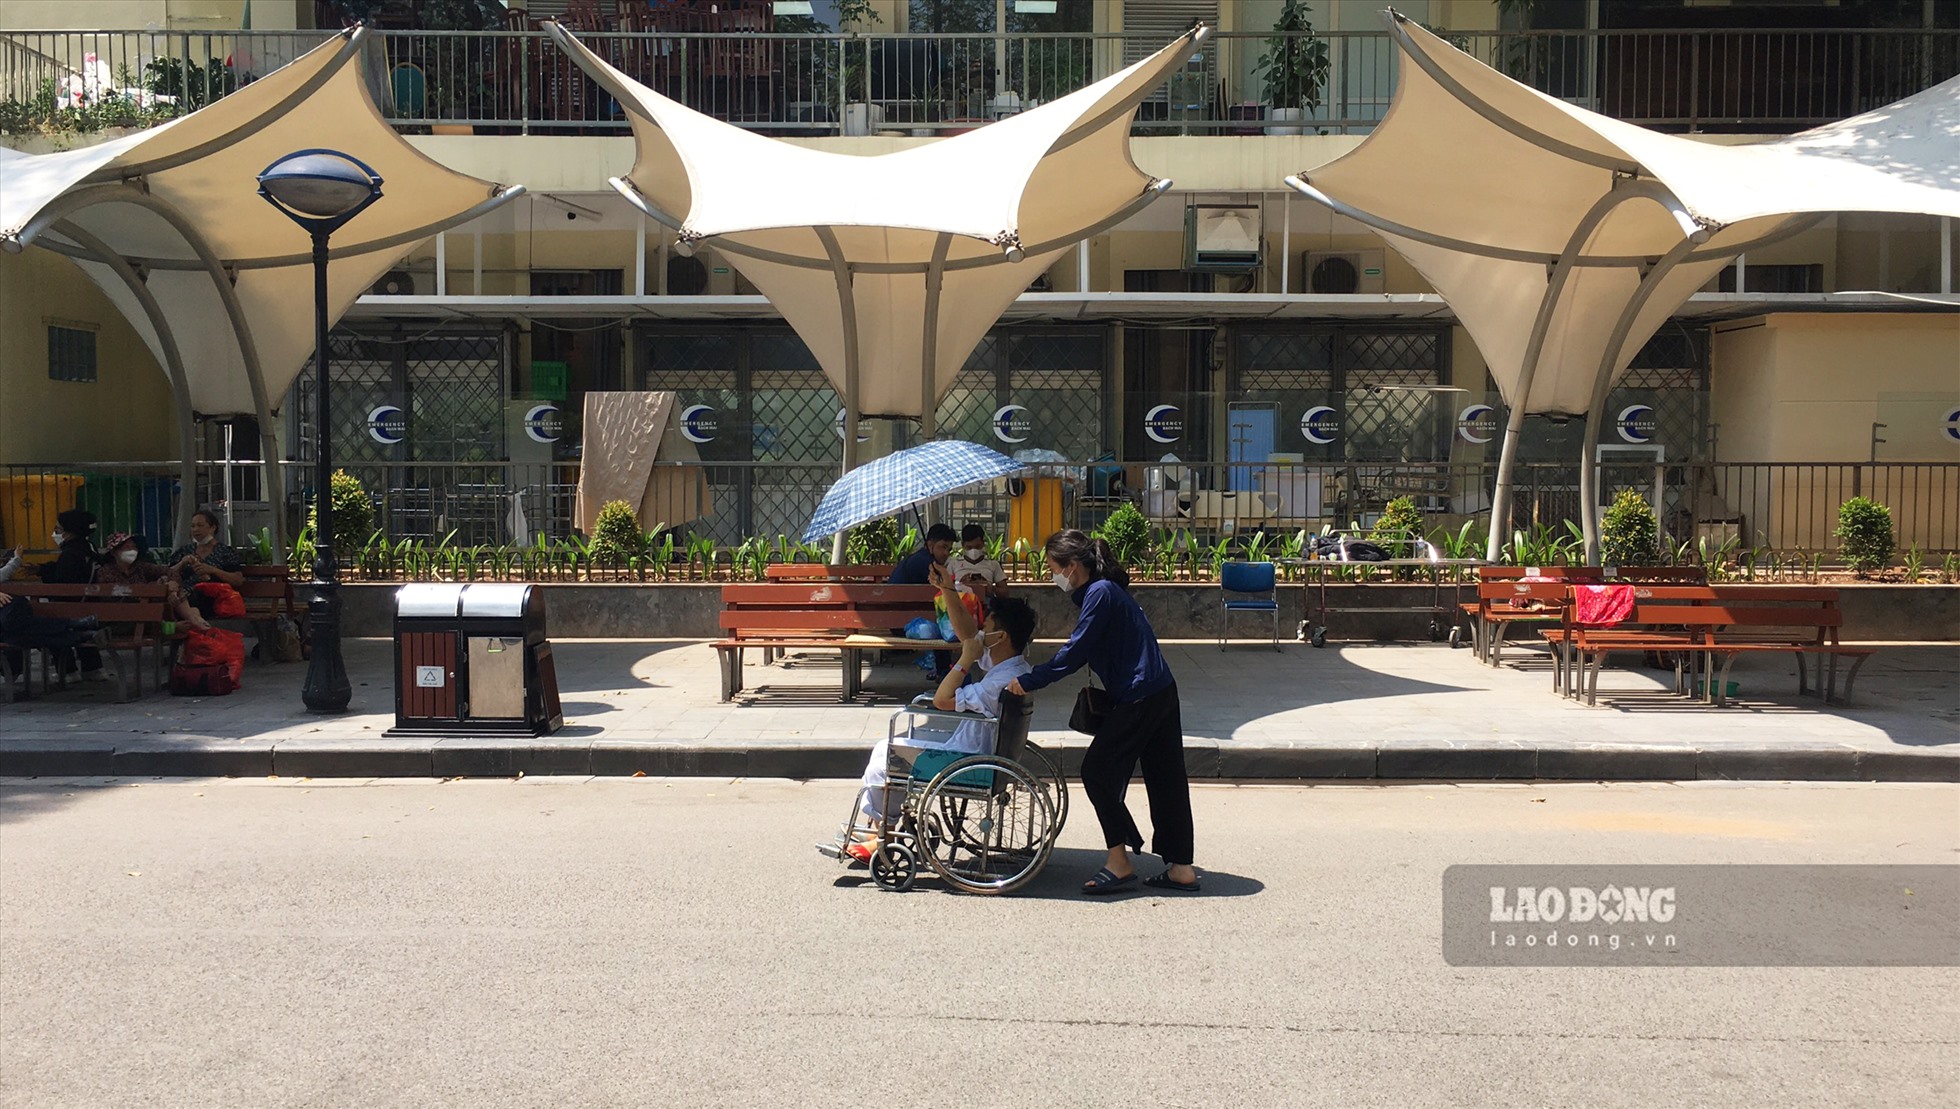 Trước thời tiết nắng gắt, bệnh nhân khi di chuyển phải sử dụng ô và các vật dụng che nắng.